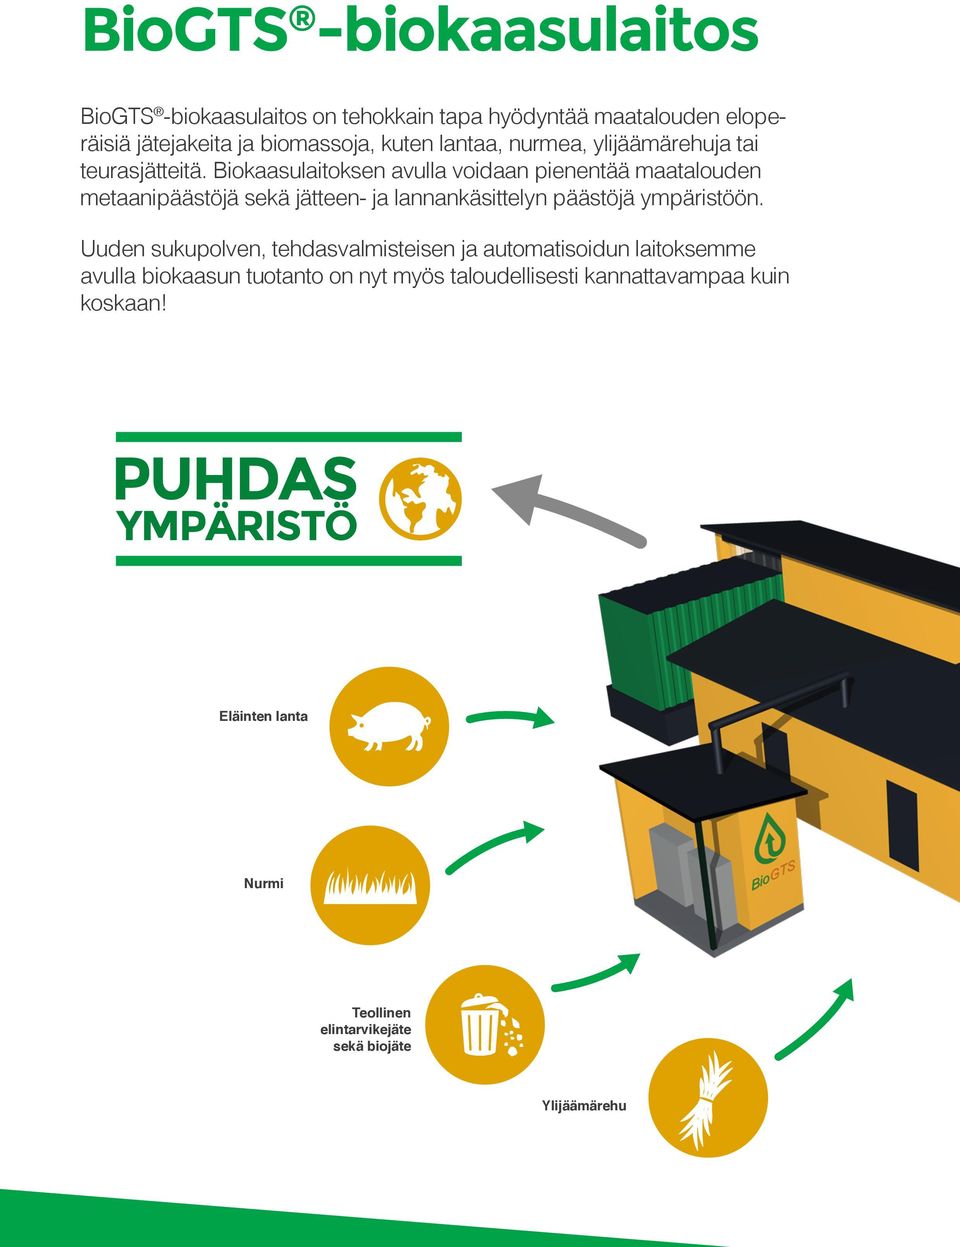 Biokaasulaitoksen avulla voidaan pienentää maatalouden metaanipäästöjä sekä jätteen- ja lannankäsittelyn päästöjä ympäristöön.